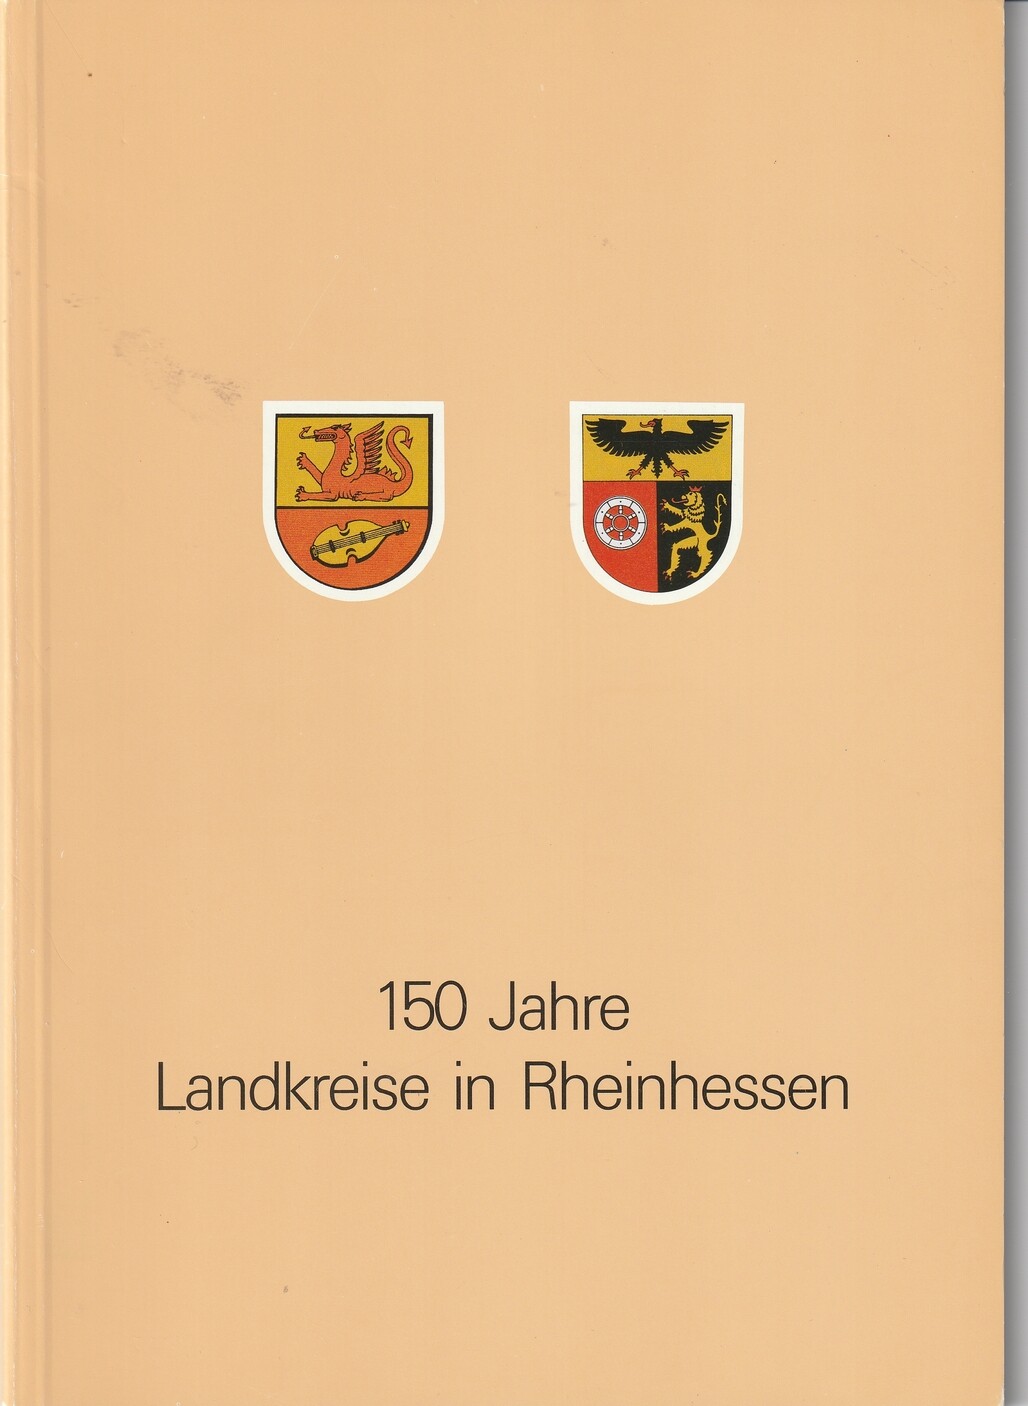 150 Jahre Landkreise in Rheinhessen (Kulturverein Guntersblum CC BY-NC-SA)